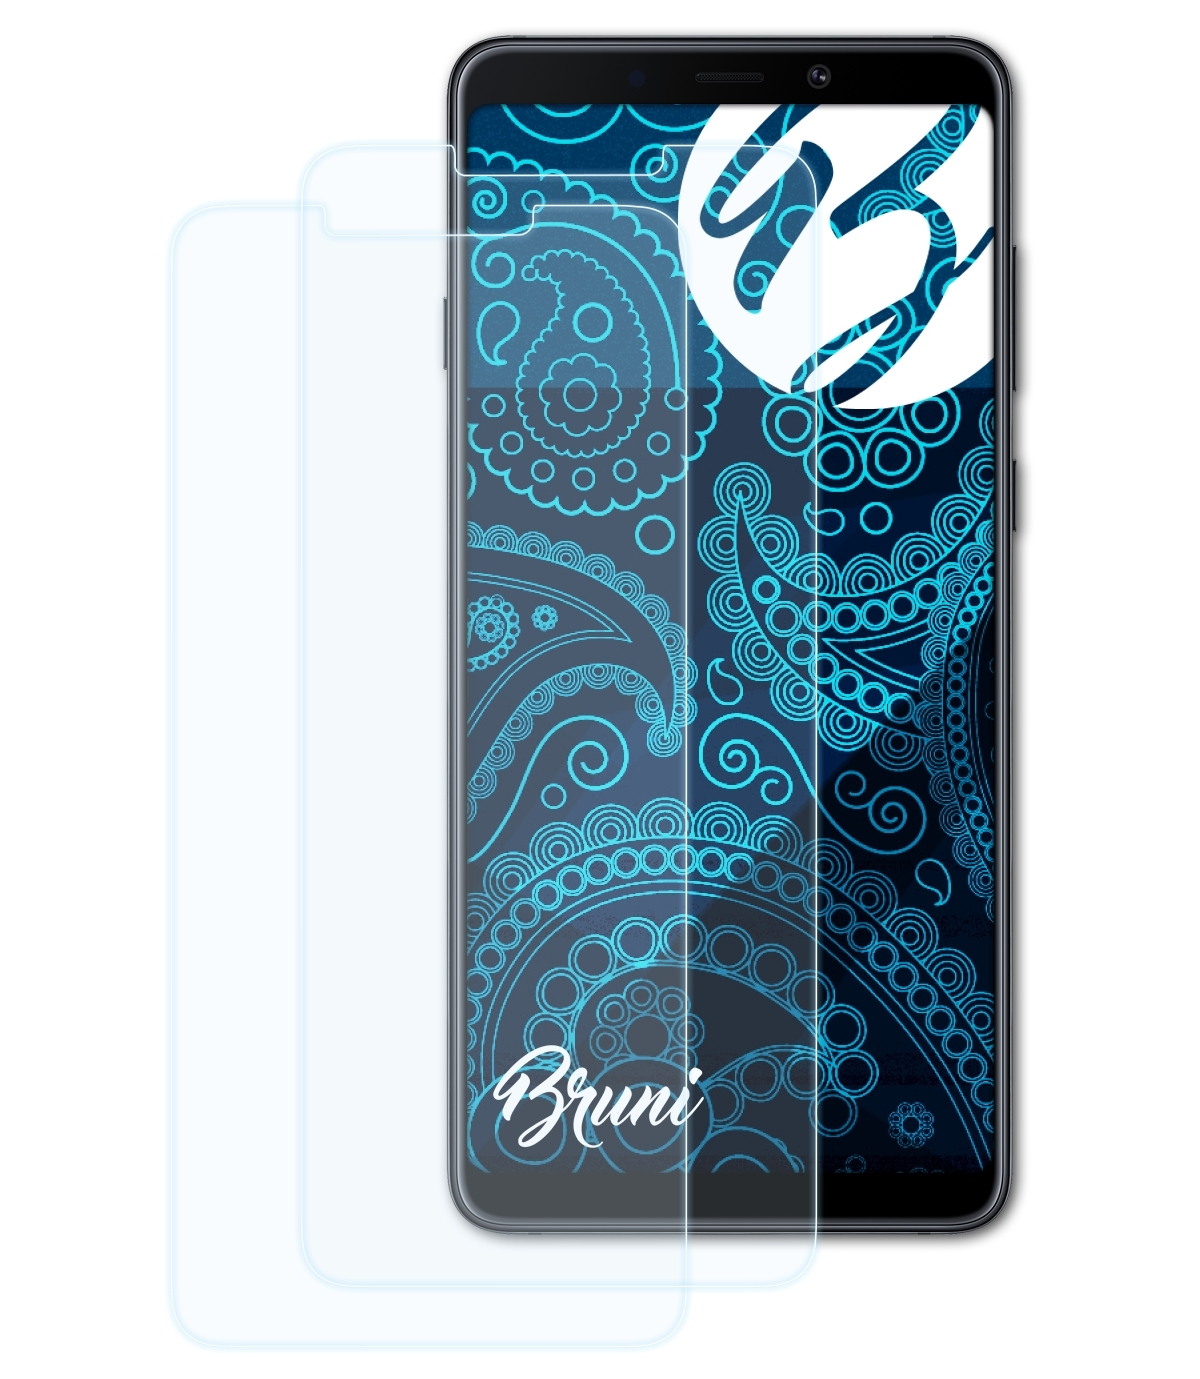 BRUNI 2x Samsung (2018)) Galaxy Basics-Clear Schutzfolie(für A9